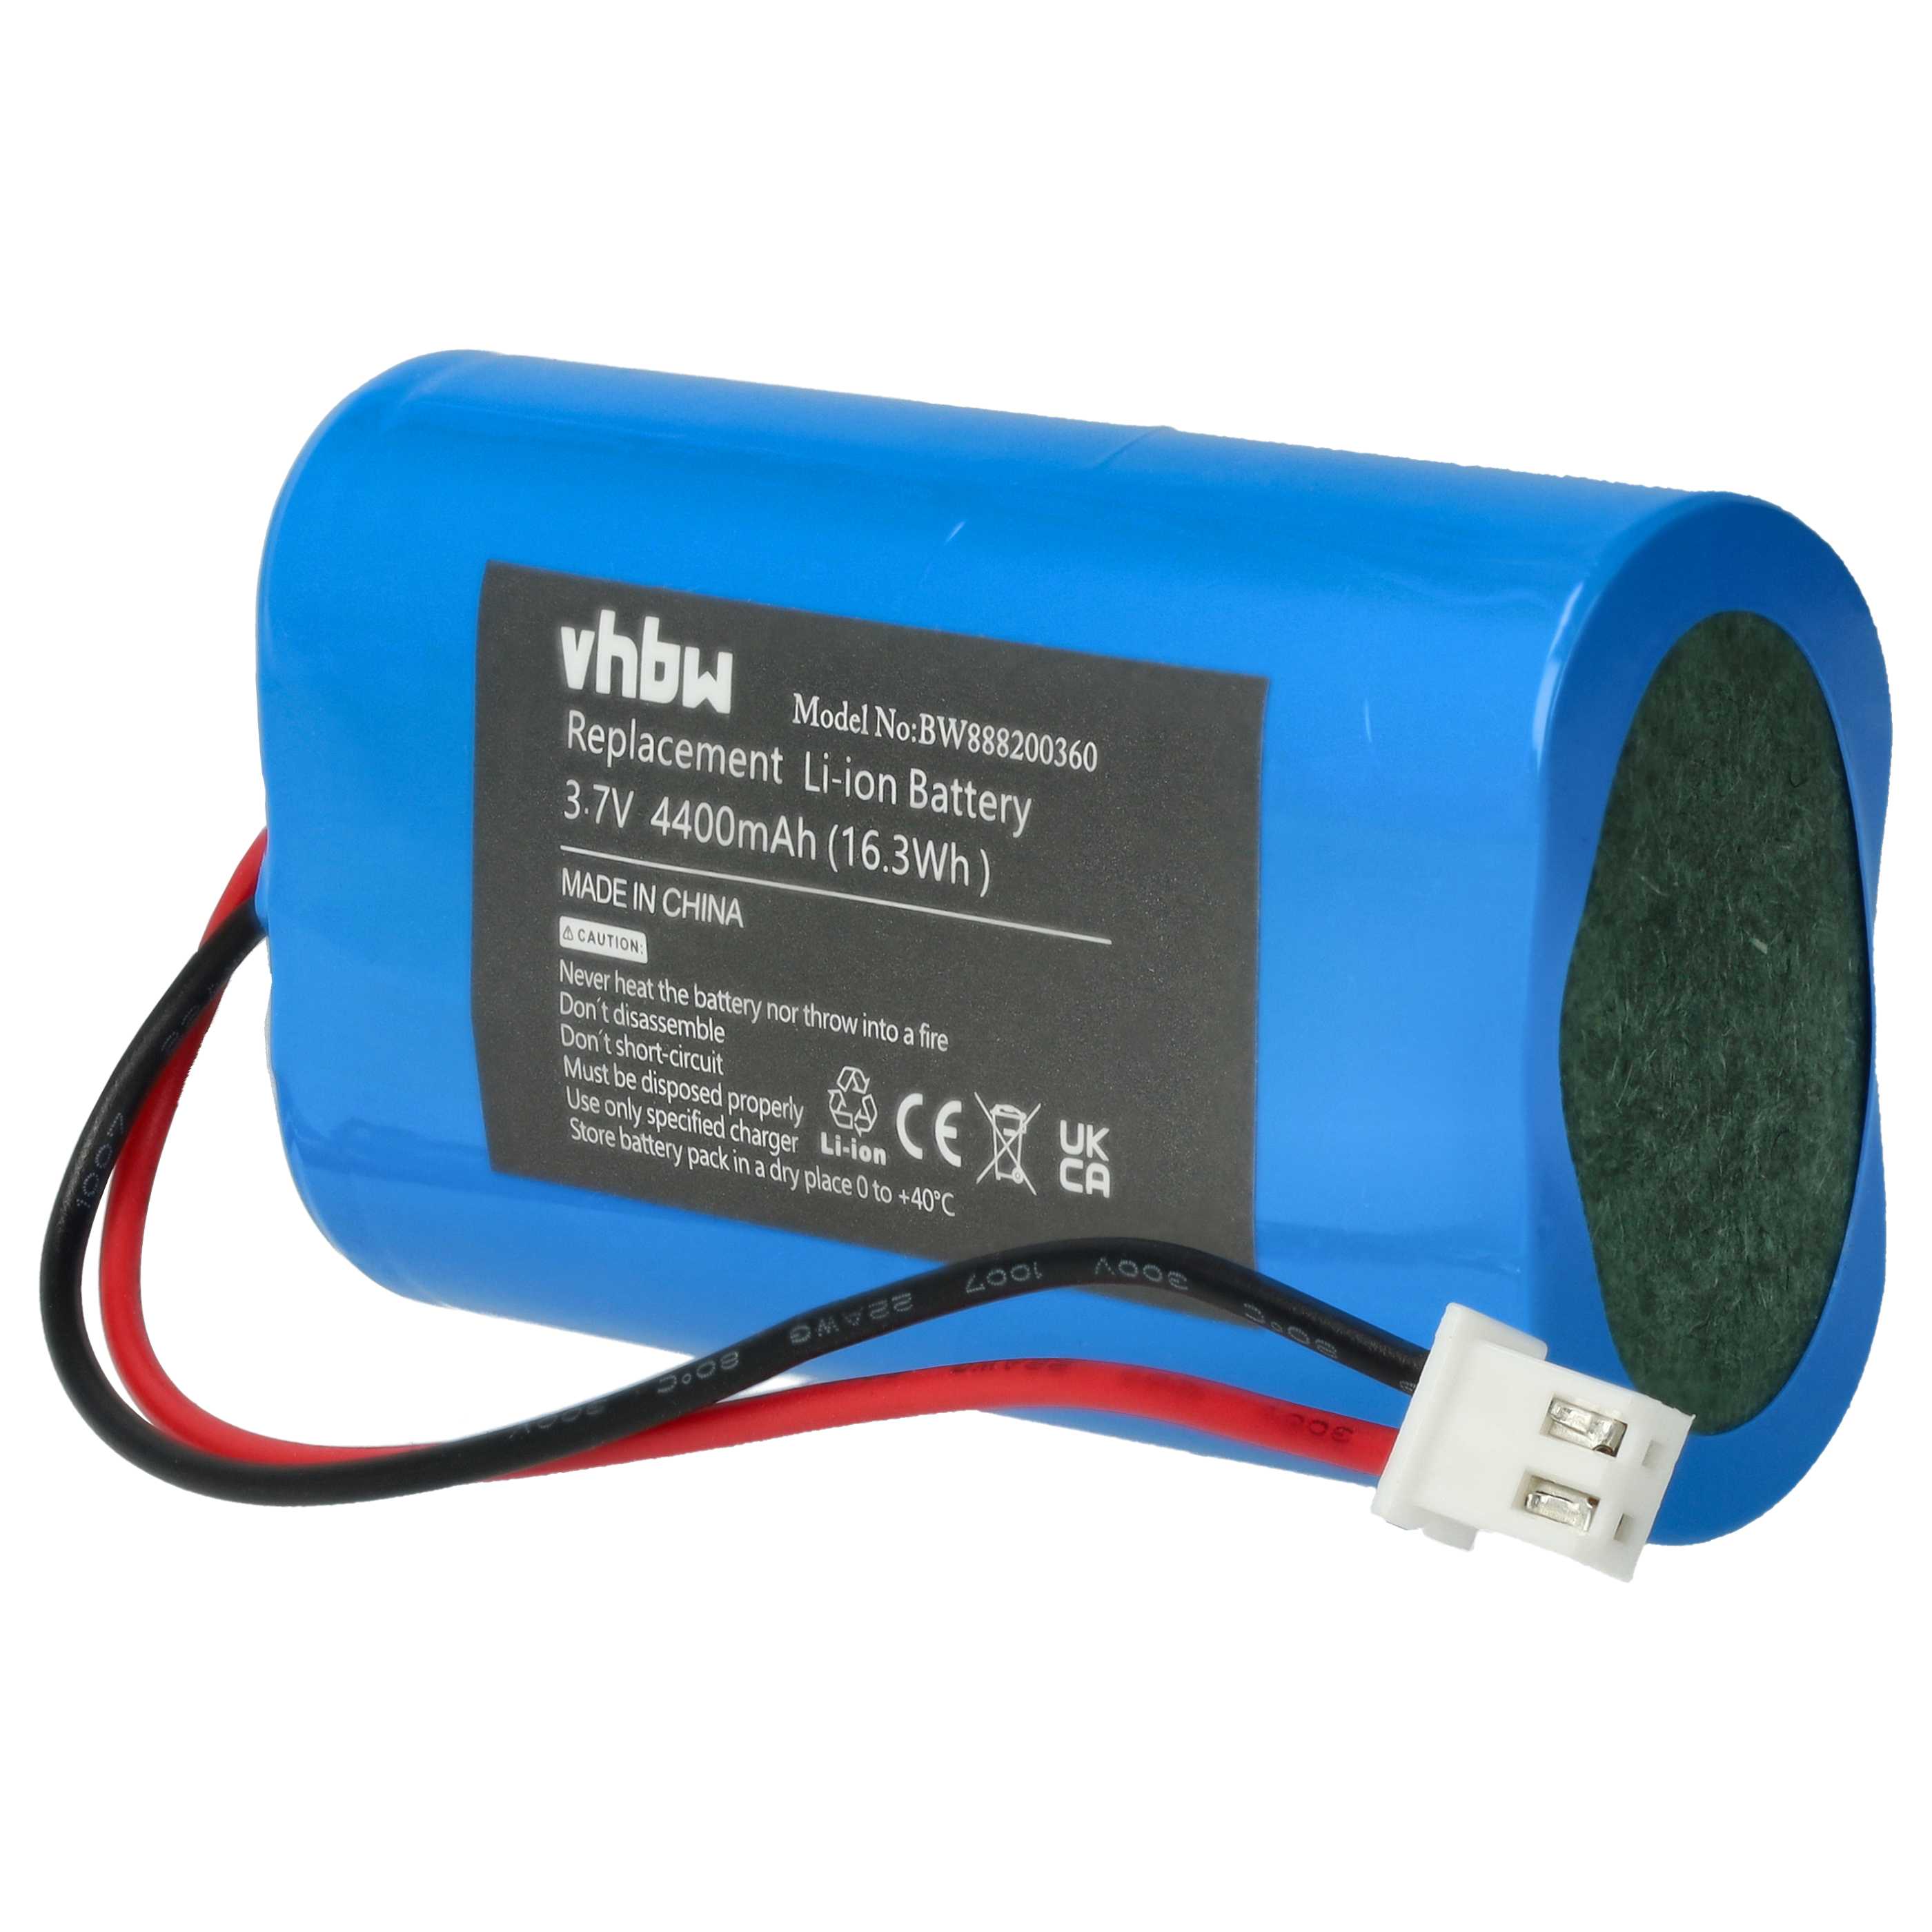 Batterie remplace Sigor 4508401 pour lampe sans fil - 4400mAh 3,7V Li-ion